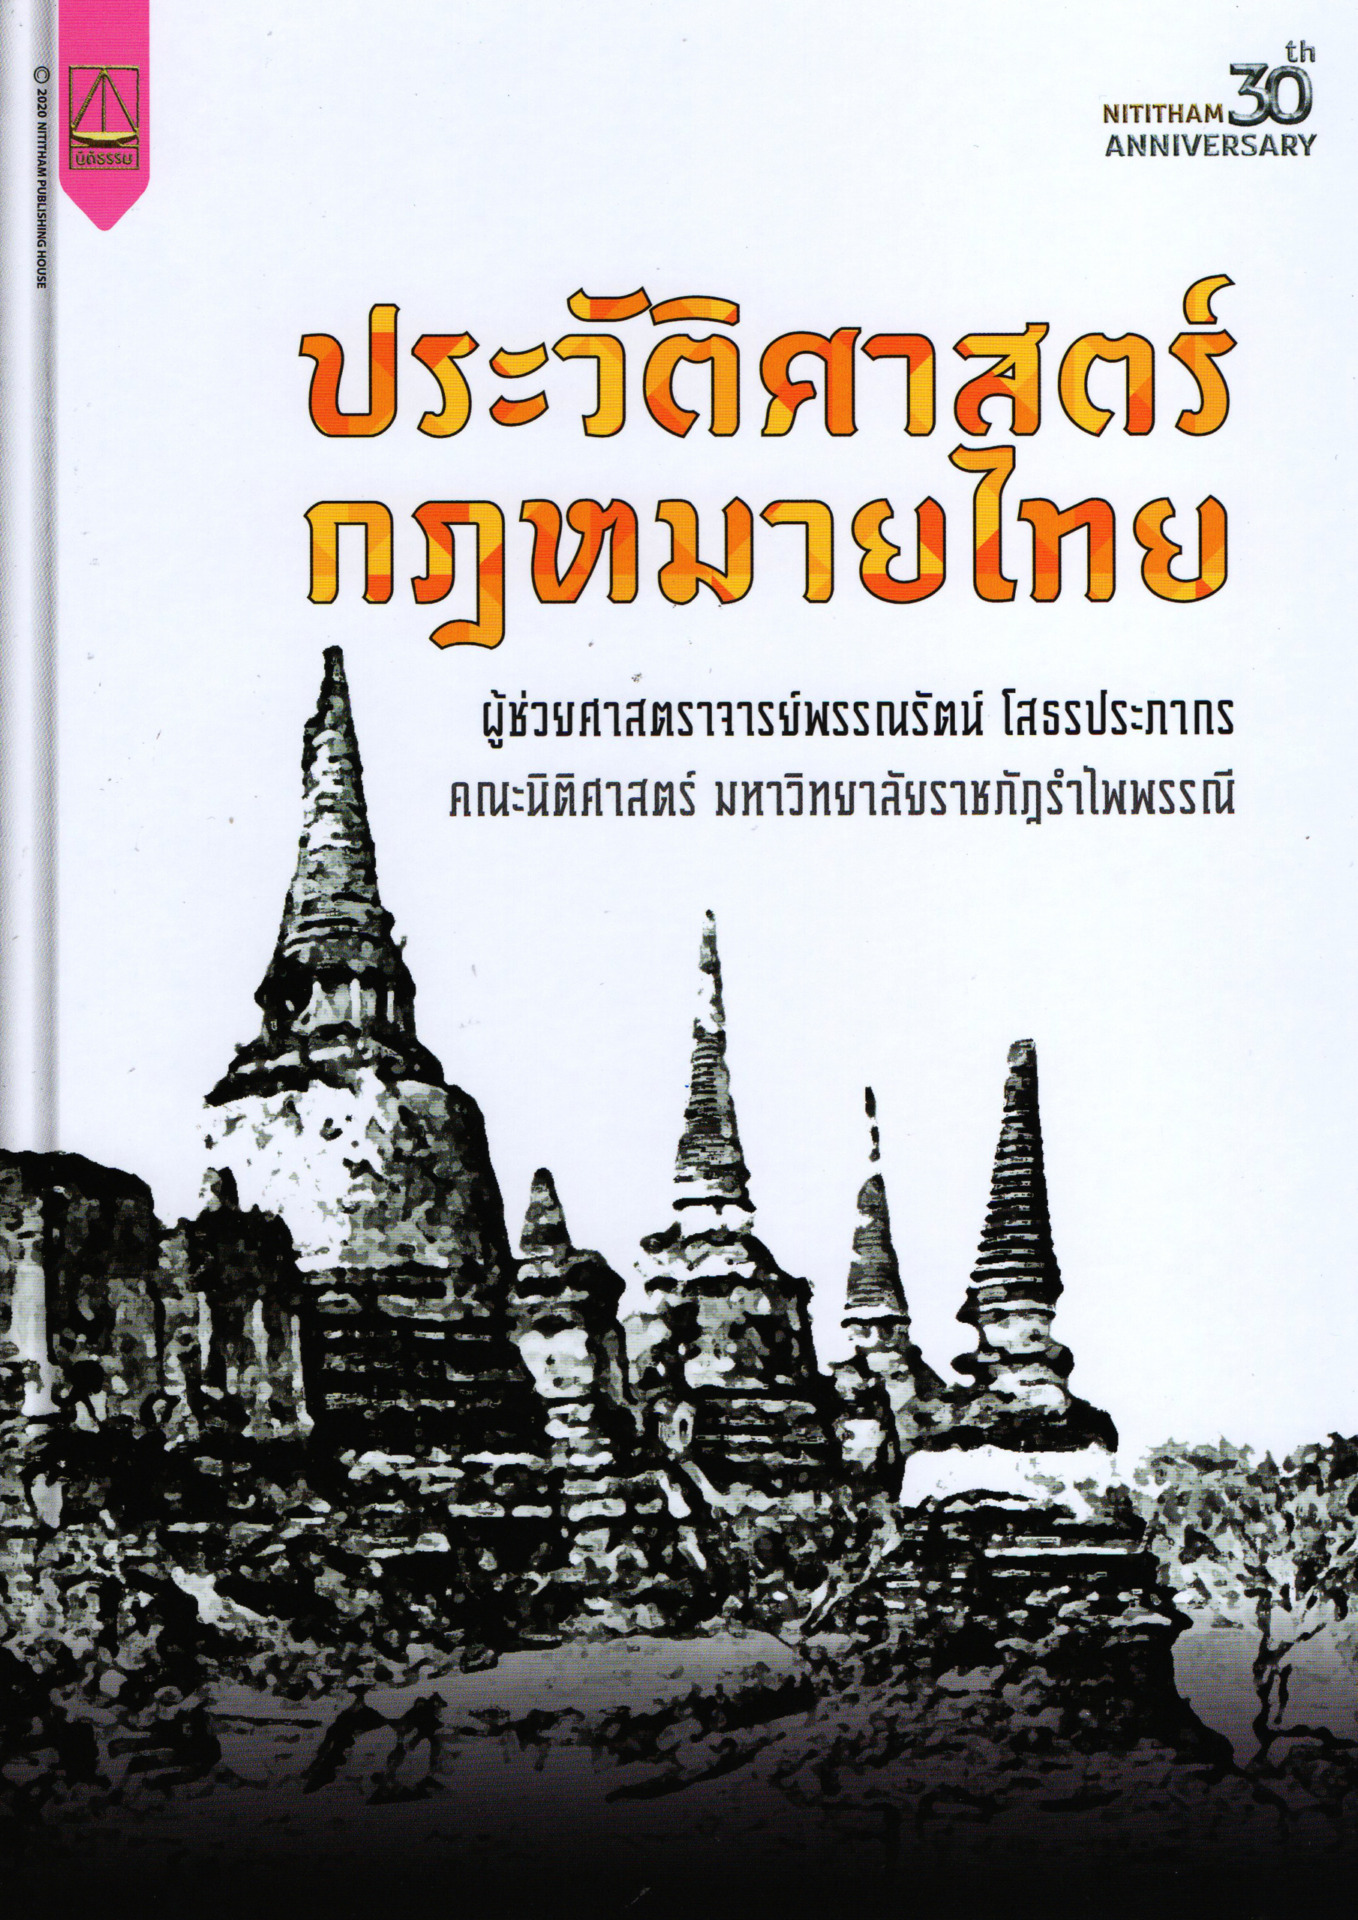 ประวัติศาสตร์กฎหมายไทย